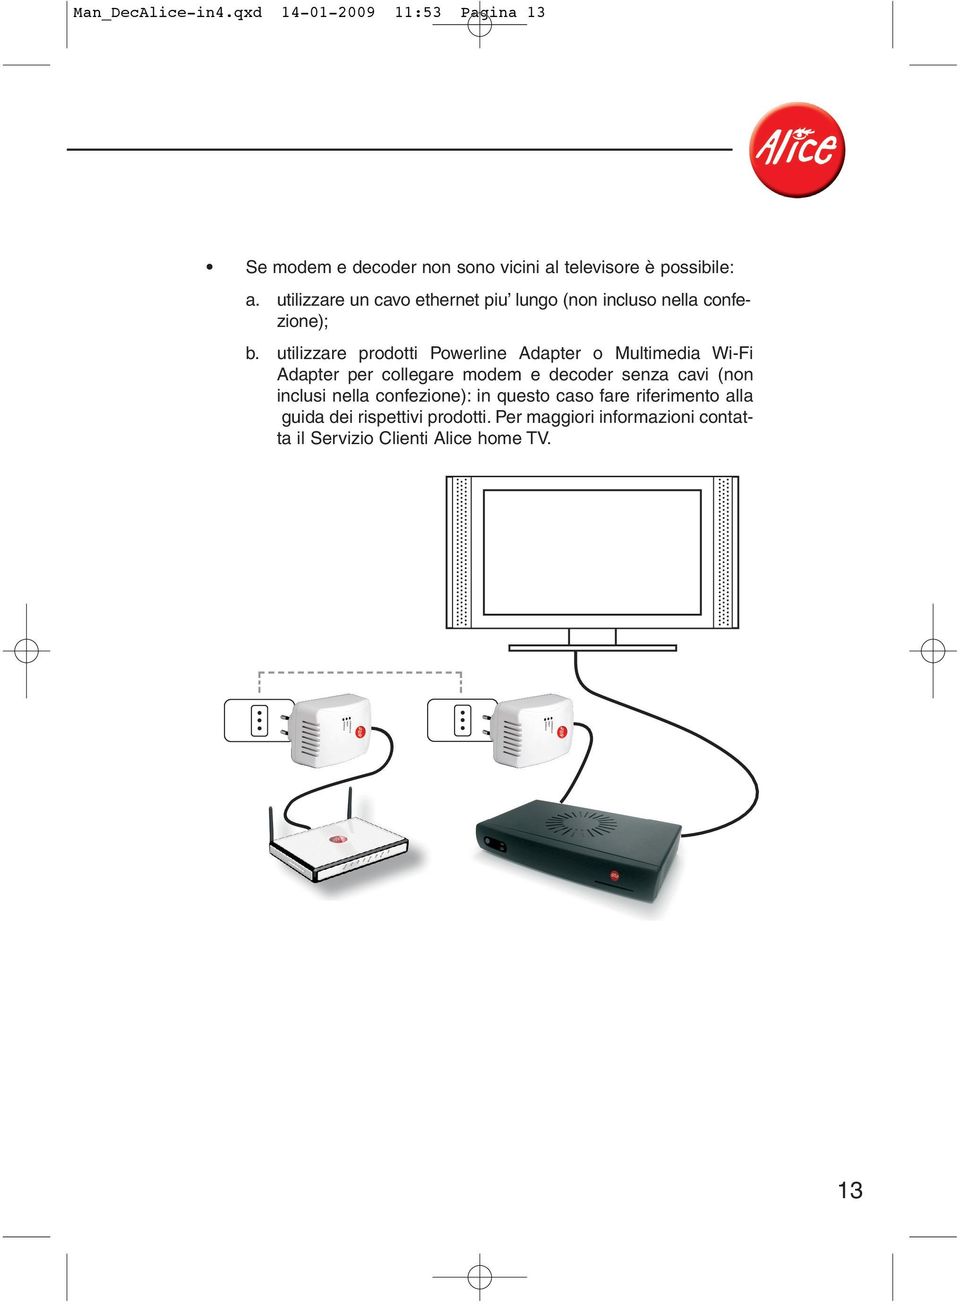 utilizzare prodotti Powerline Adapter o Multimedia Wi-Fi Adapter per collegare modem e decoder senza cavi (non